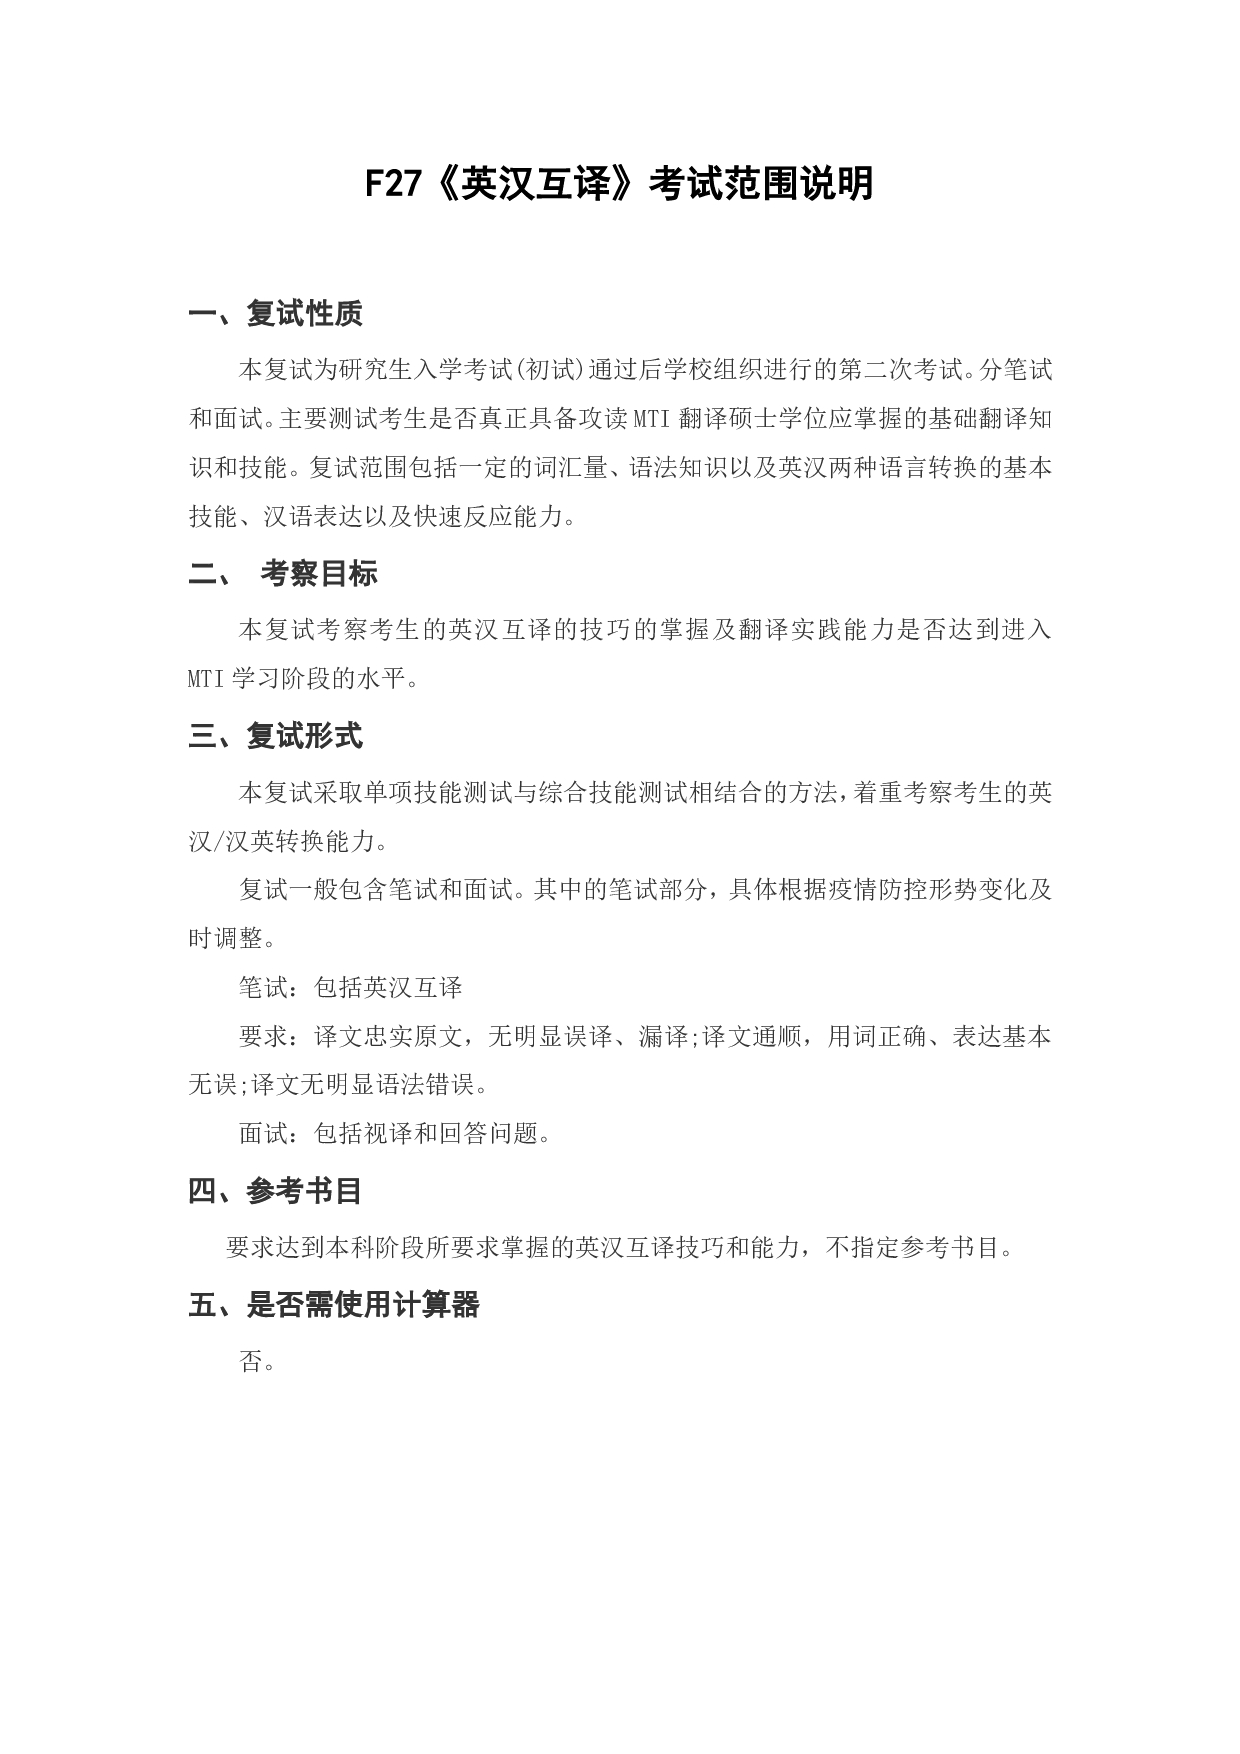 上海海洋大学2023年考研自命题科目 F27《英汉互译》 考试范围第1页